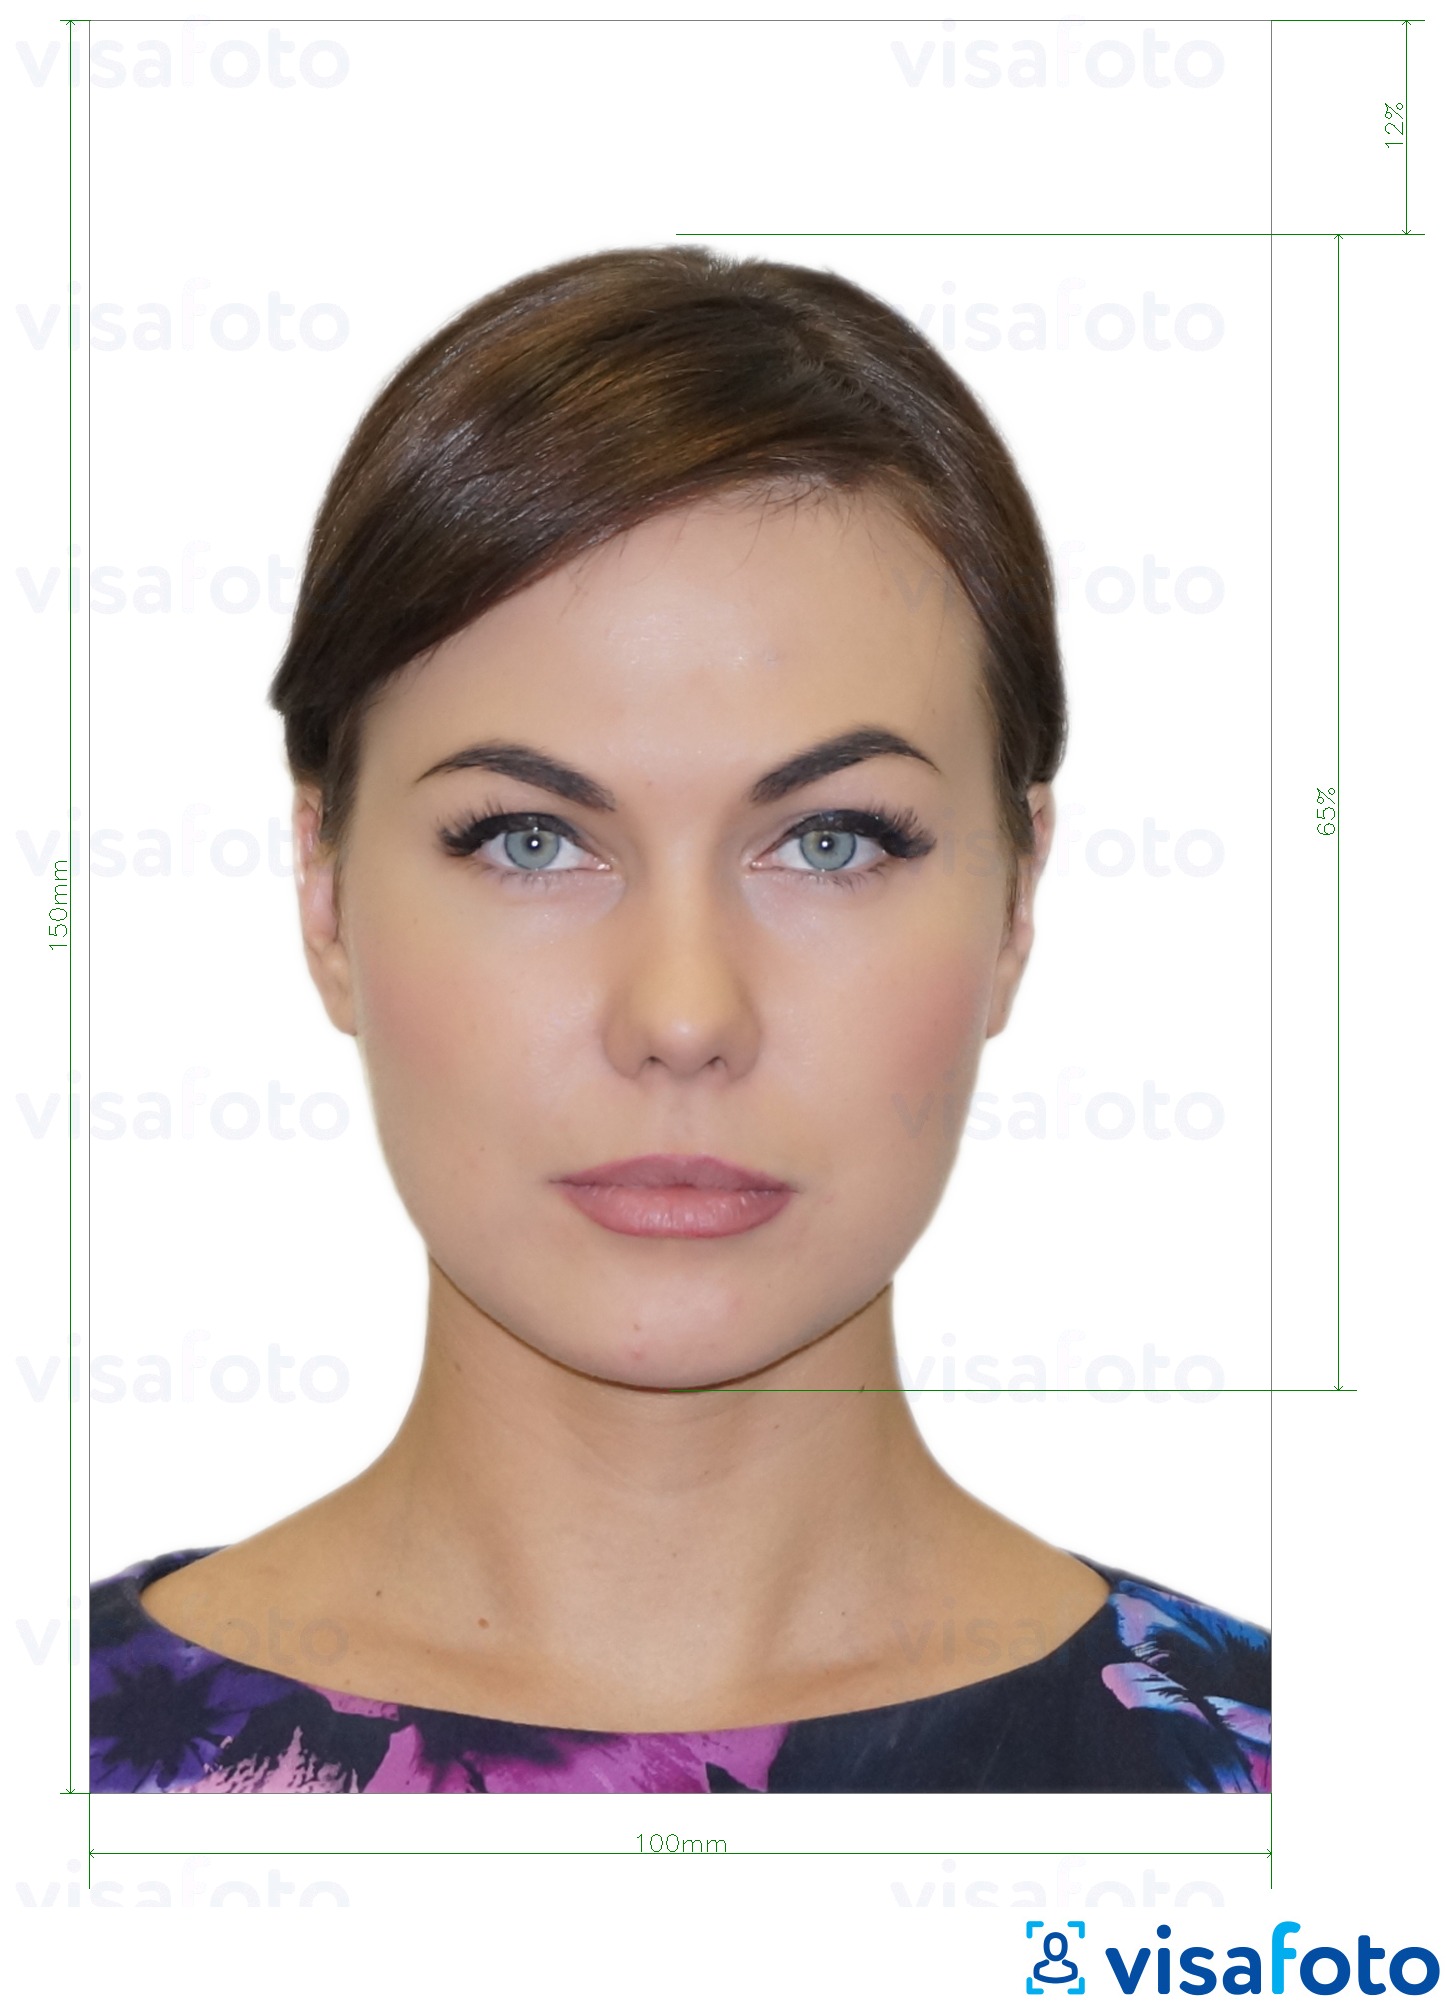 Contoh foto untuk Kad ID Moldova (Buletin de identitate) 10x15 cm dengan spesifikasi saiz yang tepat.